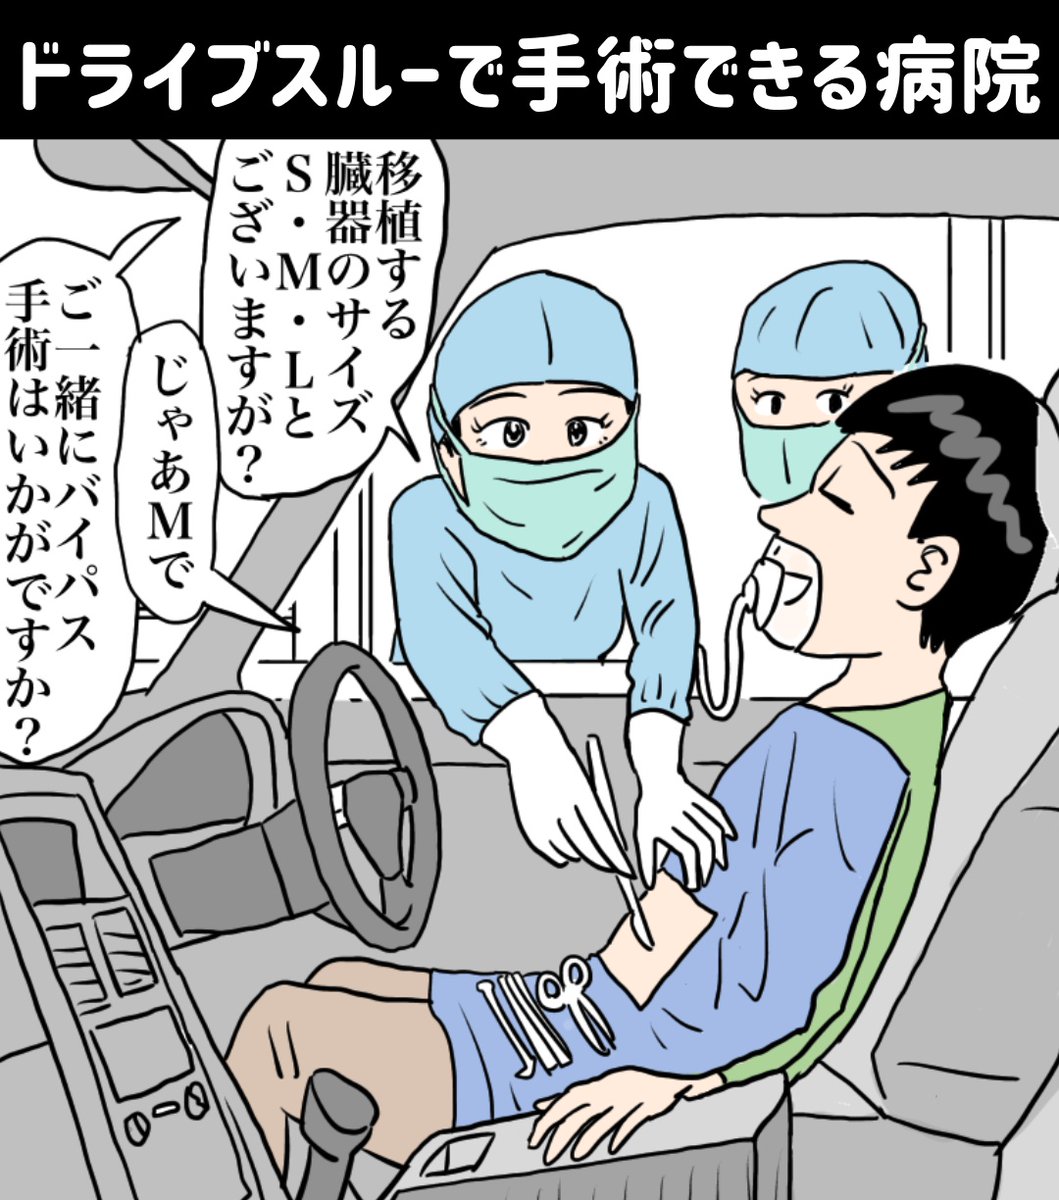 『ドライブスルーで手術できる病院』

ハッピー手術にすればオモチャが付いてくるそうです

https://t.co/YgVCM8ycxf
#illustration #illustrator #イラスト #イラストレーション #漫画 #manga #マンガ #お笑い #ギャグ漫画 